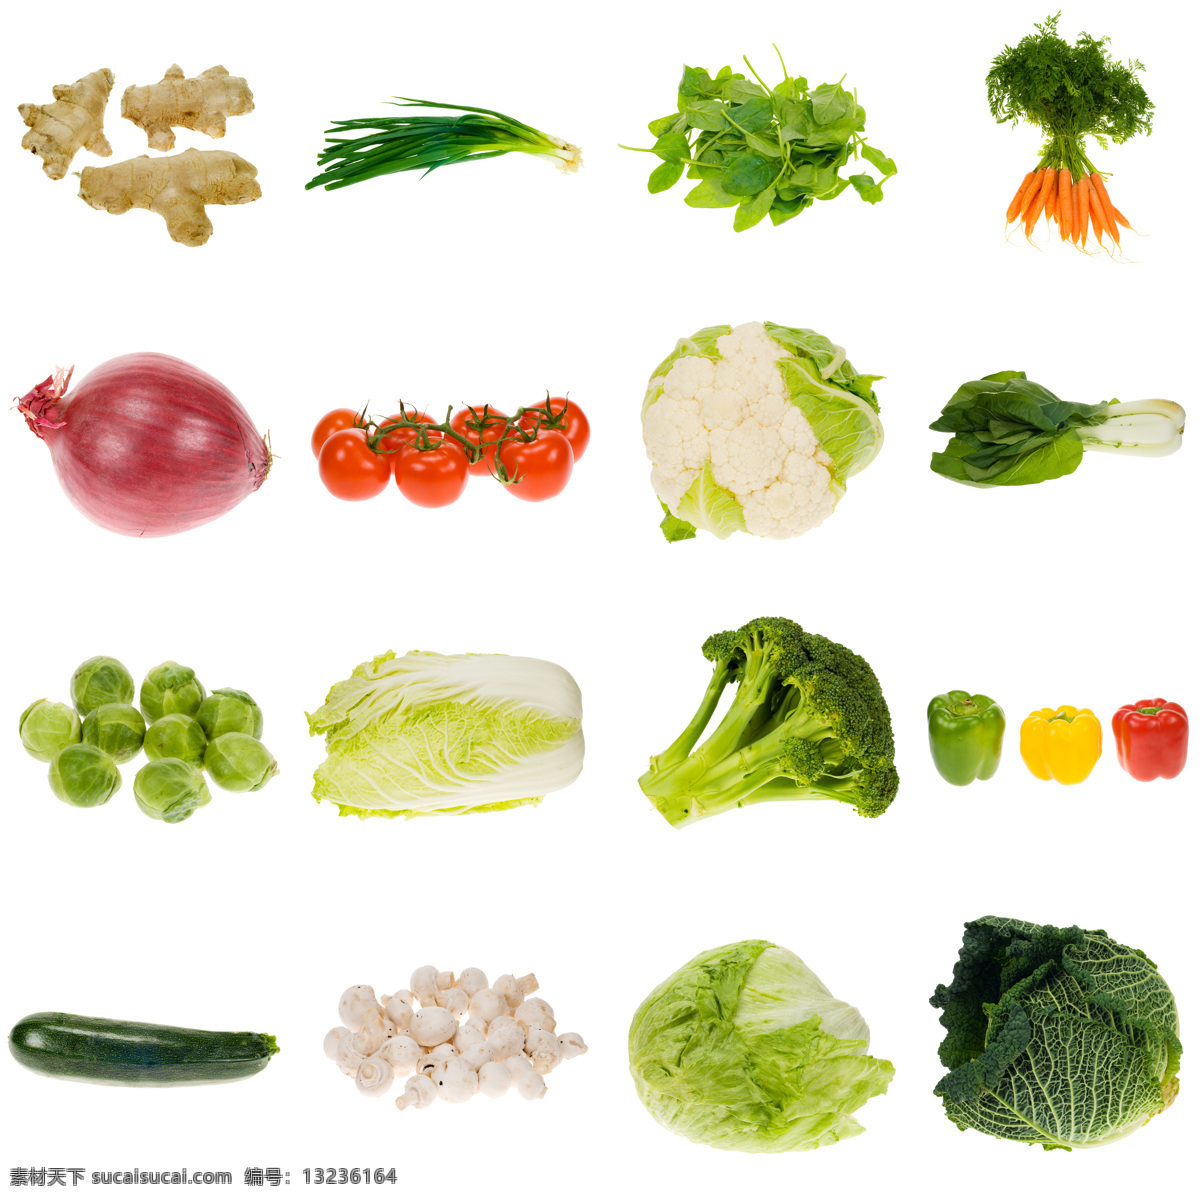 蔬菜 背景 素材图片 花菜 白菜 包菜 青菜 辣椒 萝卜 茄子 洋葱 绿色蔬菜 新鲜蔬菜 蔬菜背景 蔬菜图片 餐饮美食